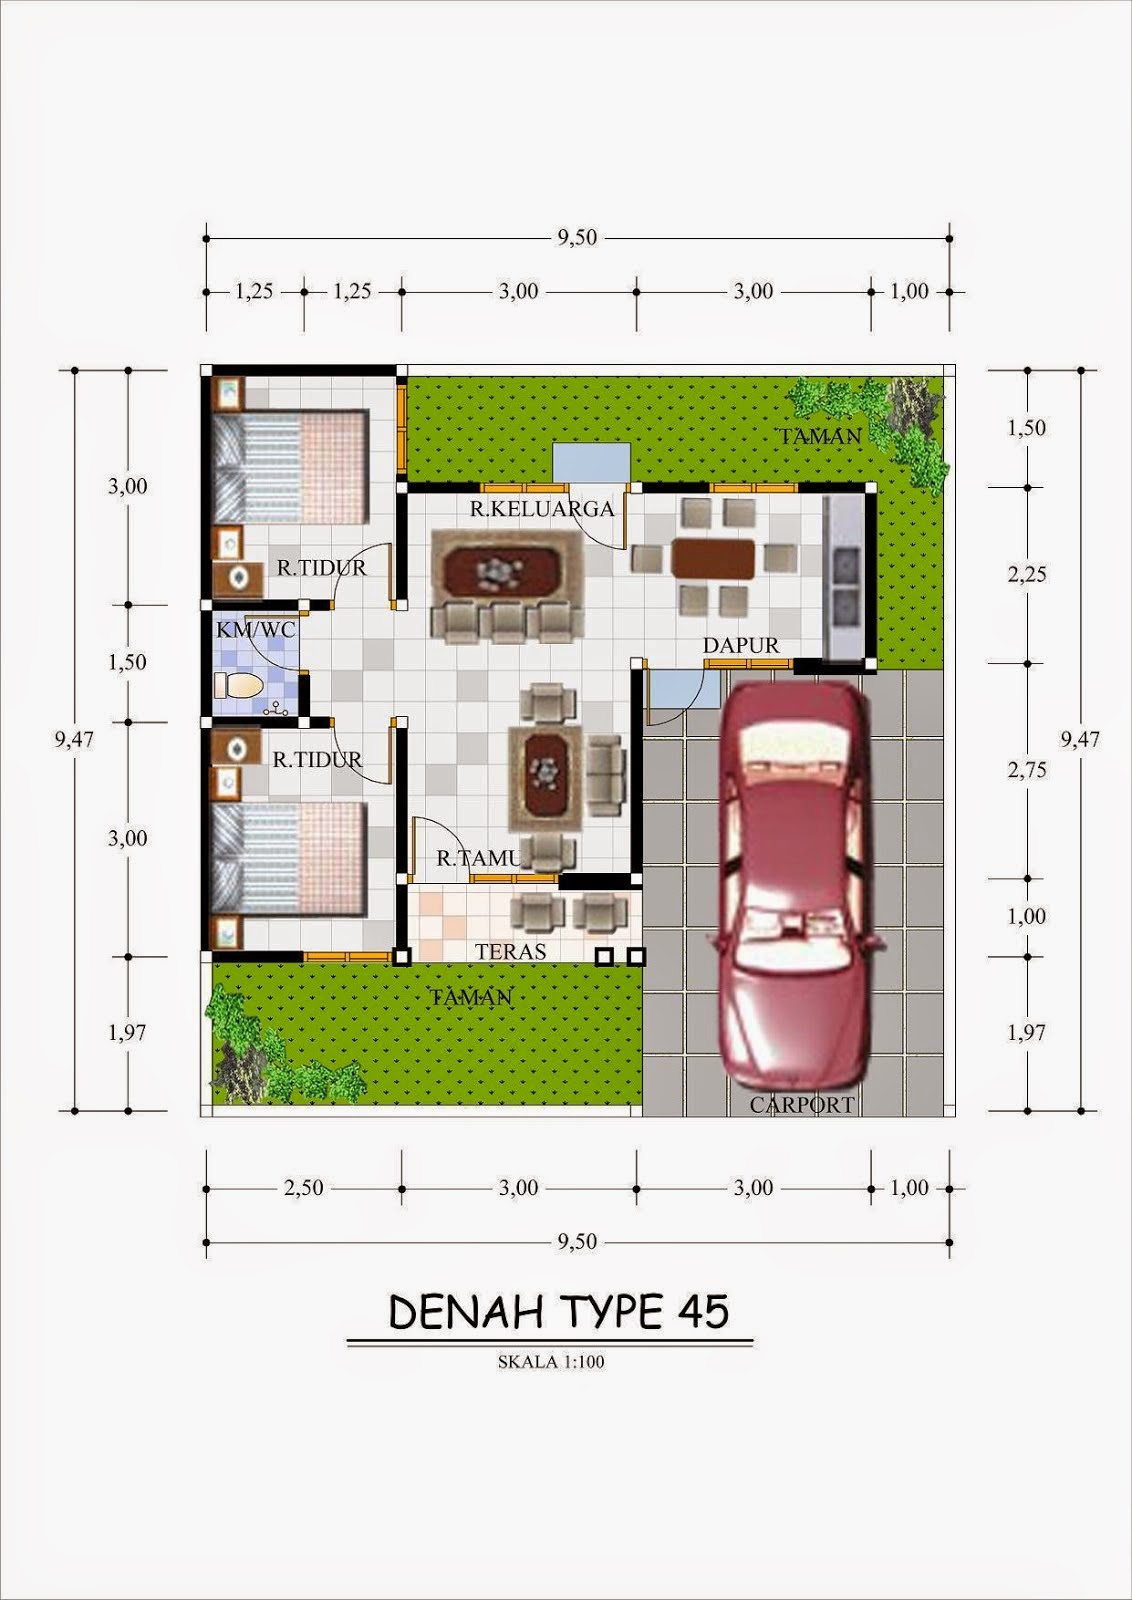 Denah Rumah Minimalis Type 45 1 Lantai Terbaru 2015 ~ Pagar Rumah